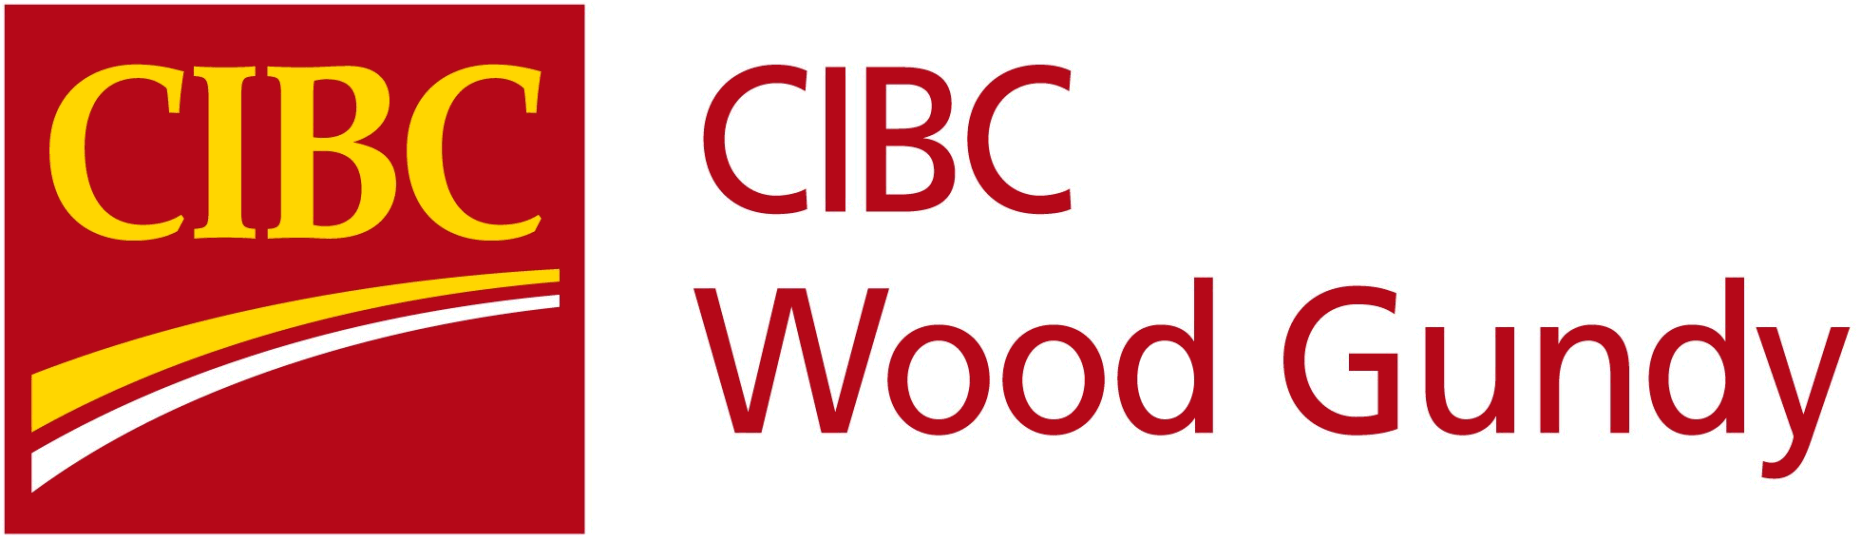 CIBC_Wood_Gundy_(1997)_logo.png